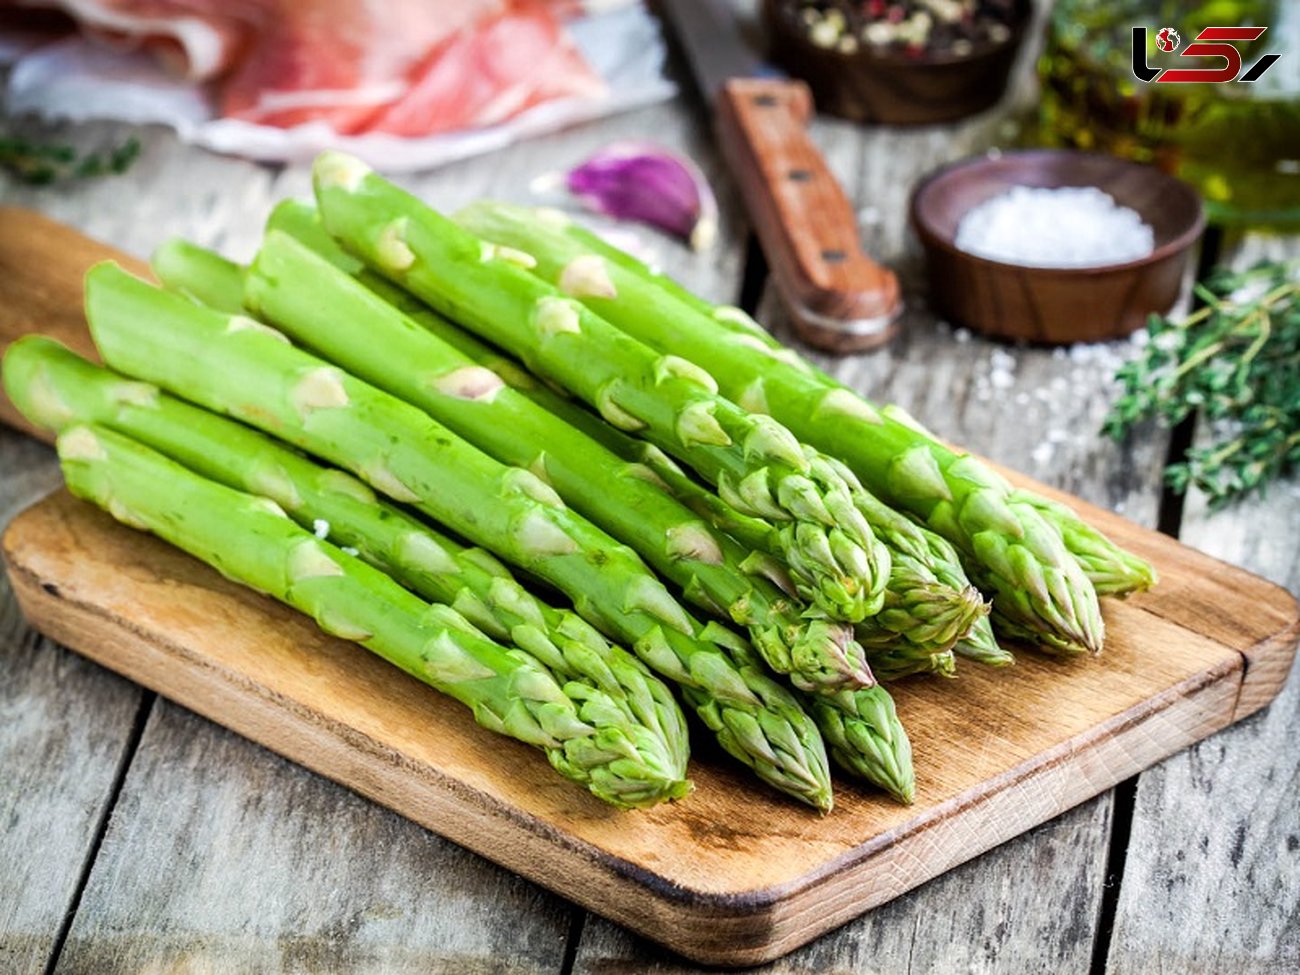 درمان نفخ شکم /آشتی با سبزیجات مفید